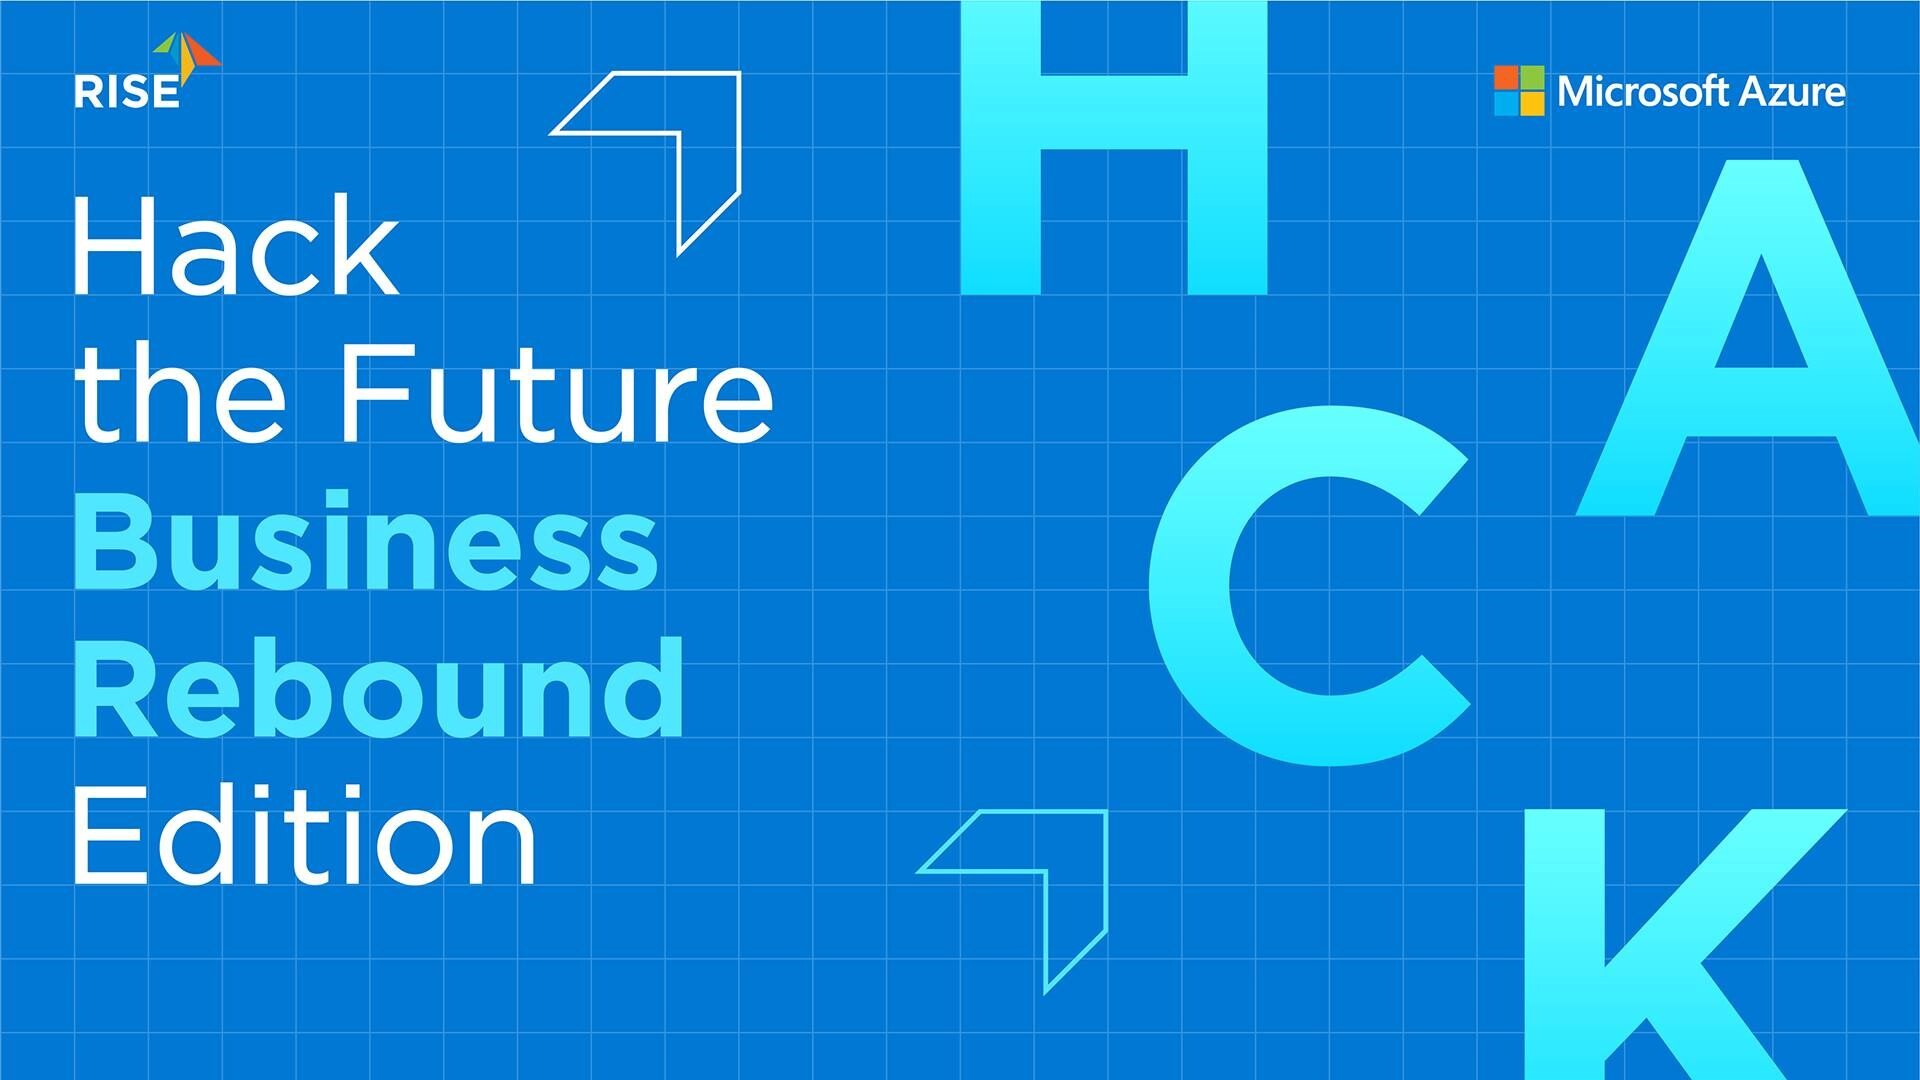 ไมโครซอฟท์จับมือ RISE ผุดโครงการ “Hack the Future: Business Rebound Edition” เร่งสร้างนวัตกรรมเพื่อ SME ไทย กู้ธุรกิจหลังวิกฤตโควิด-19